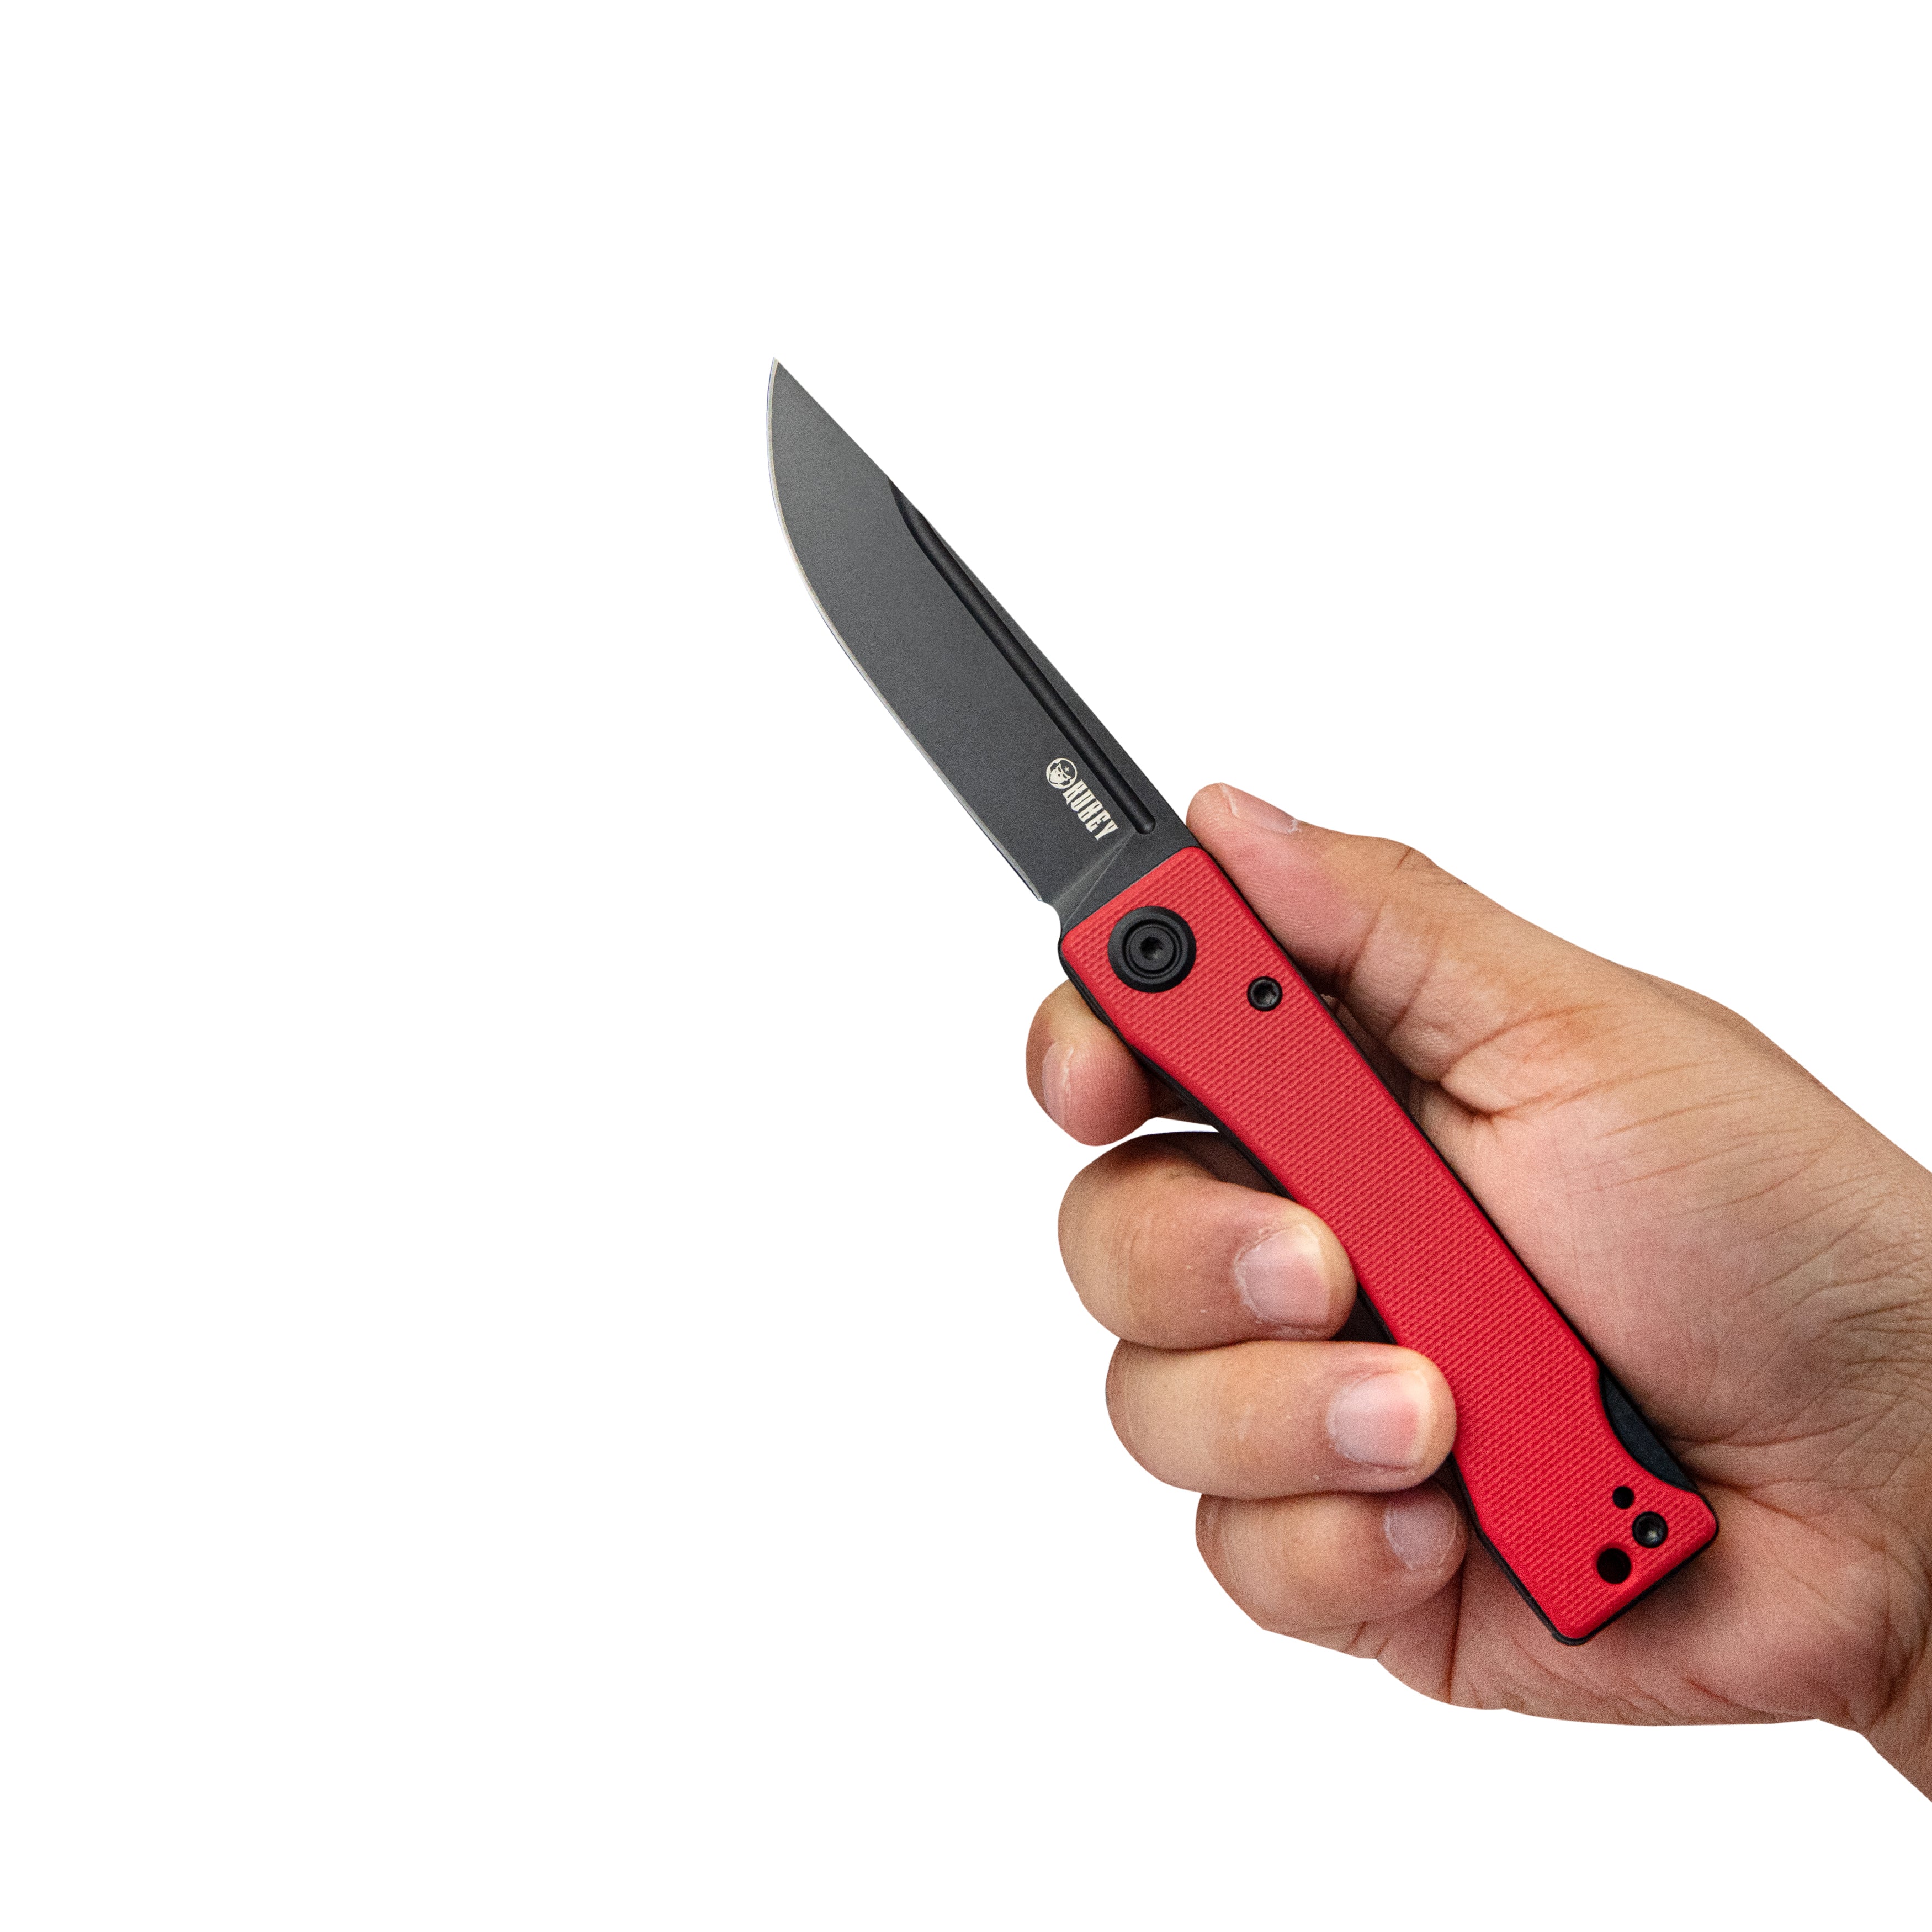 Kubey Akino Lockback Pocket Folding Knife Red G10 Handle 3.15" Blackwashed Sandvik 14C28N KU2102C